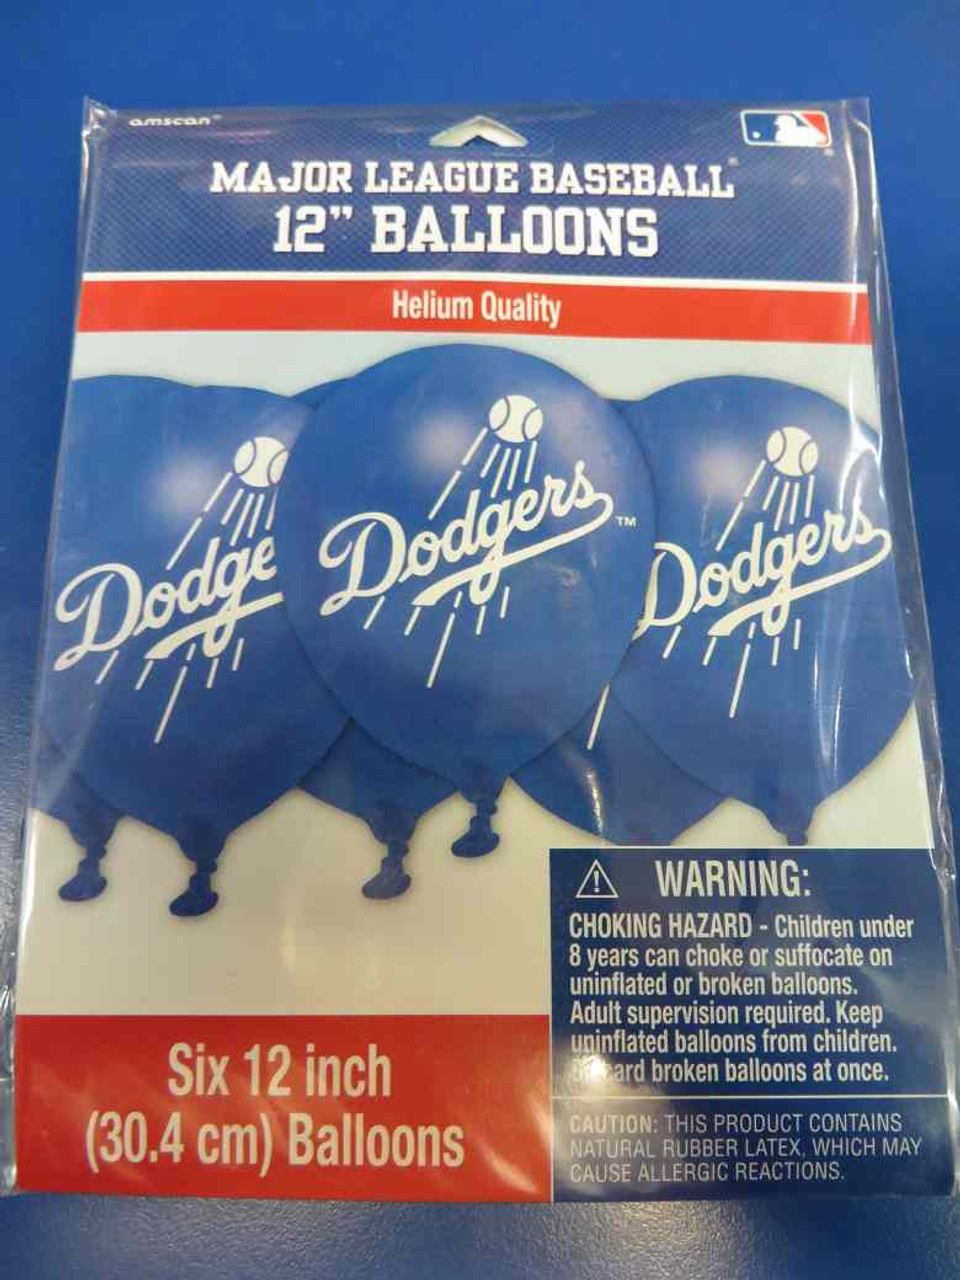 L.A. Dodgers Loot Bags